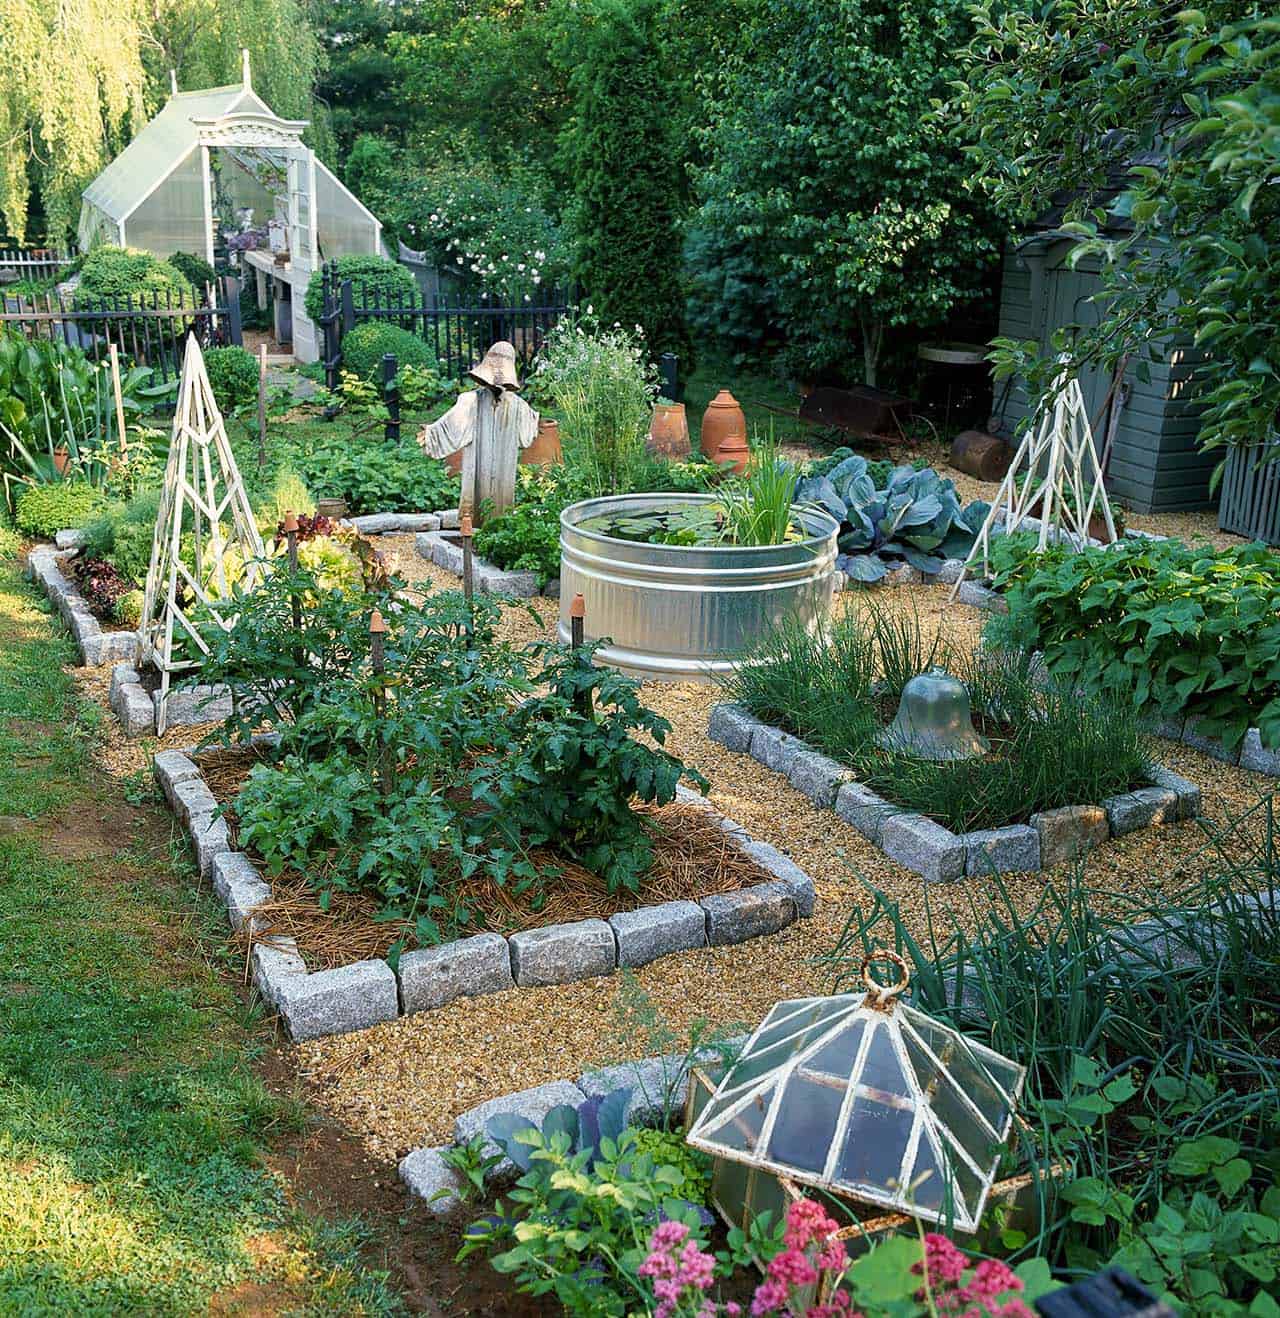 Growing A Vegetable Garden, Making A Backyard Vegetable Garden